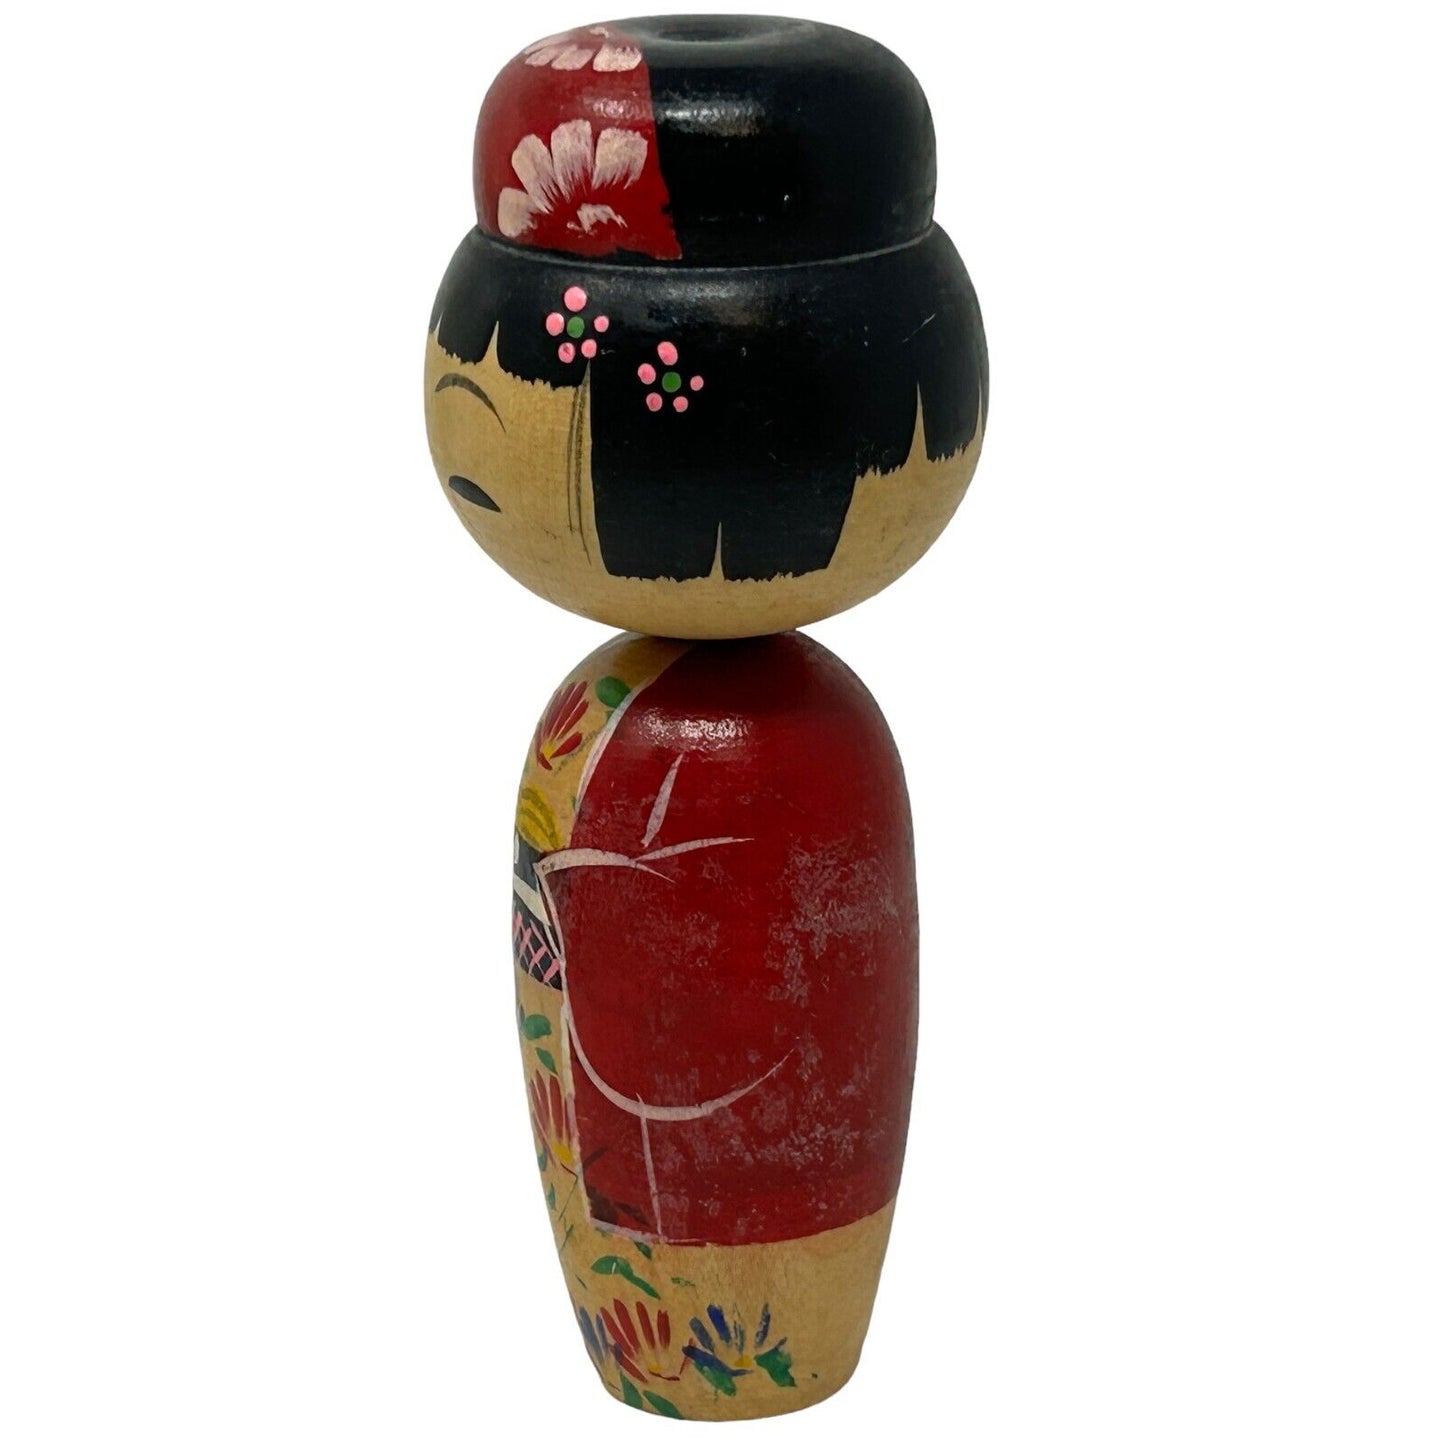 Vintage Japanese Wooden Kokeshi Nodder Doll Bobblehead Handmade Folk Art